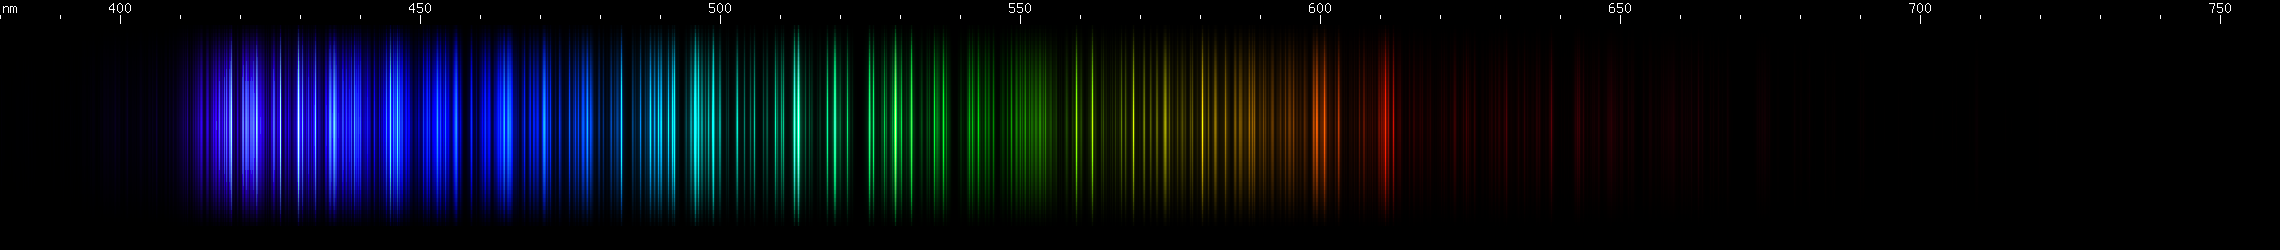 Spectral Lines of Neodymium